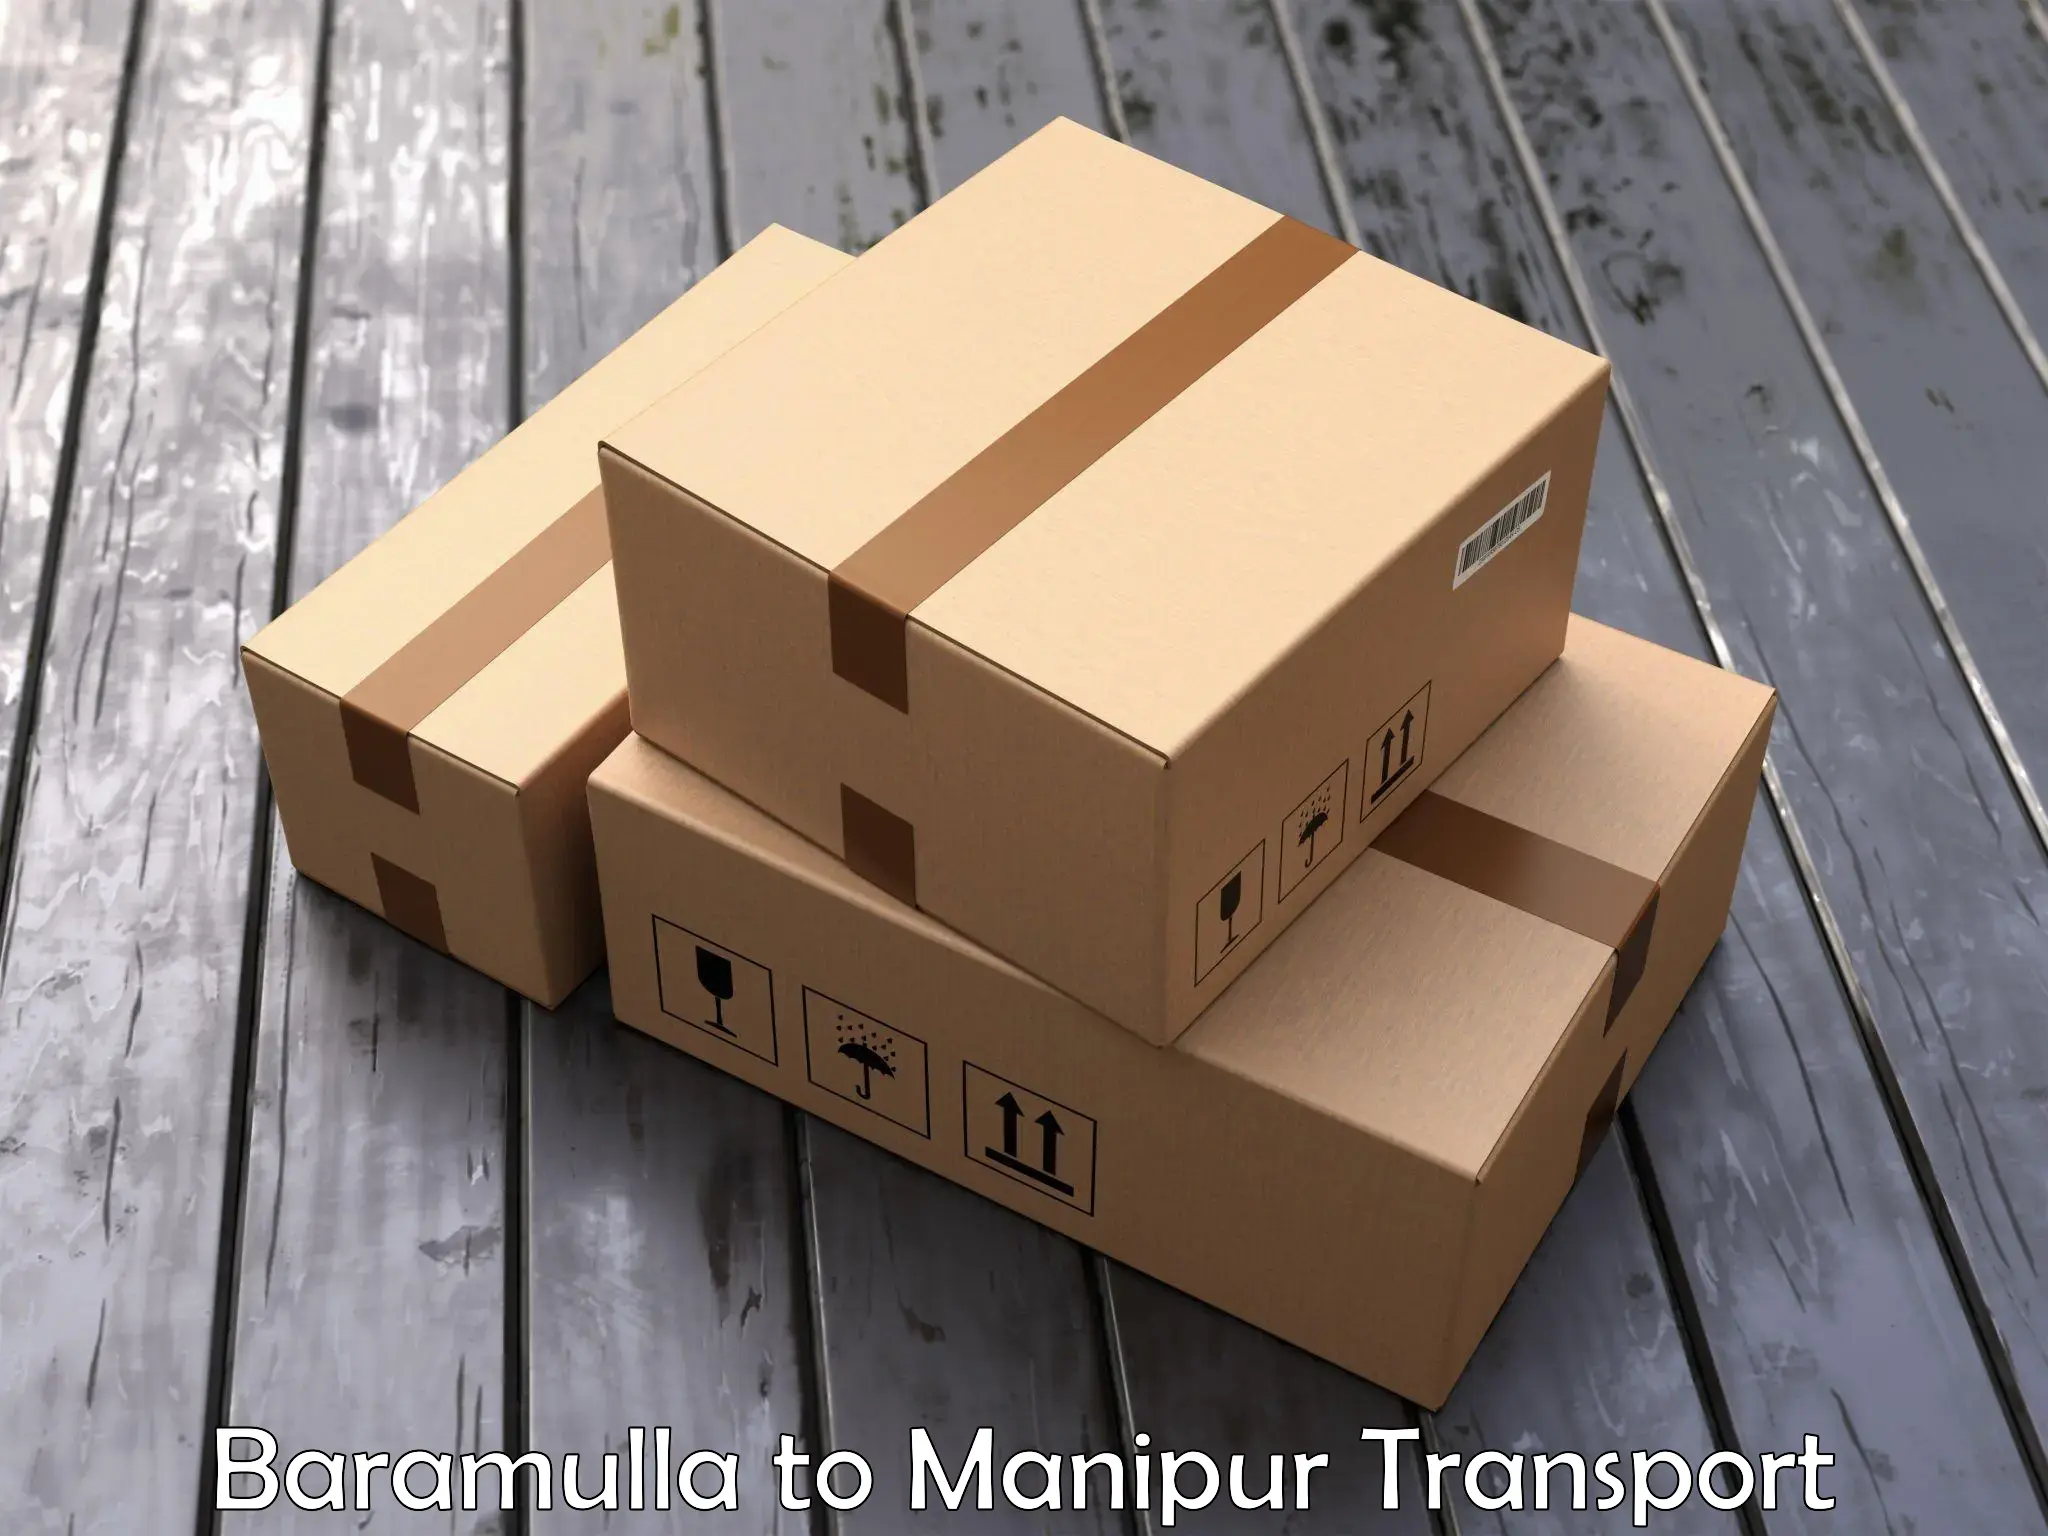 Furniture transport service Baramulla to Kanti